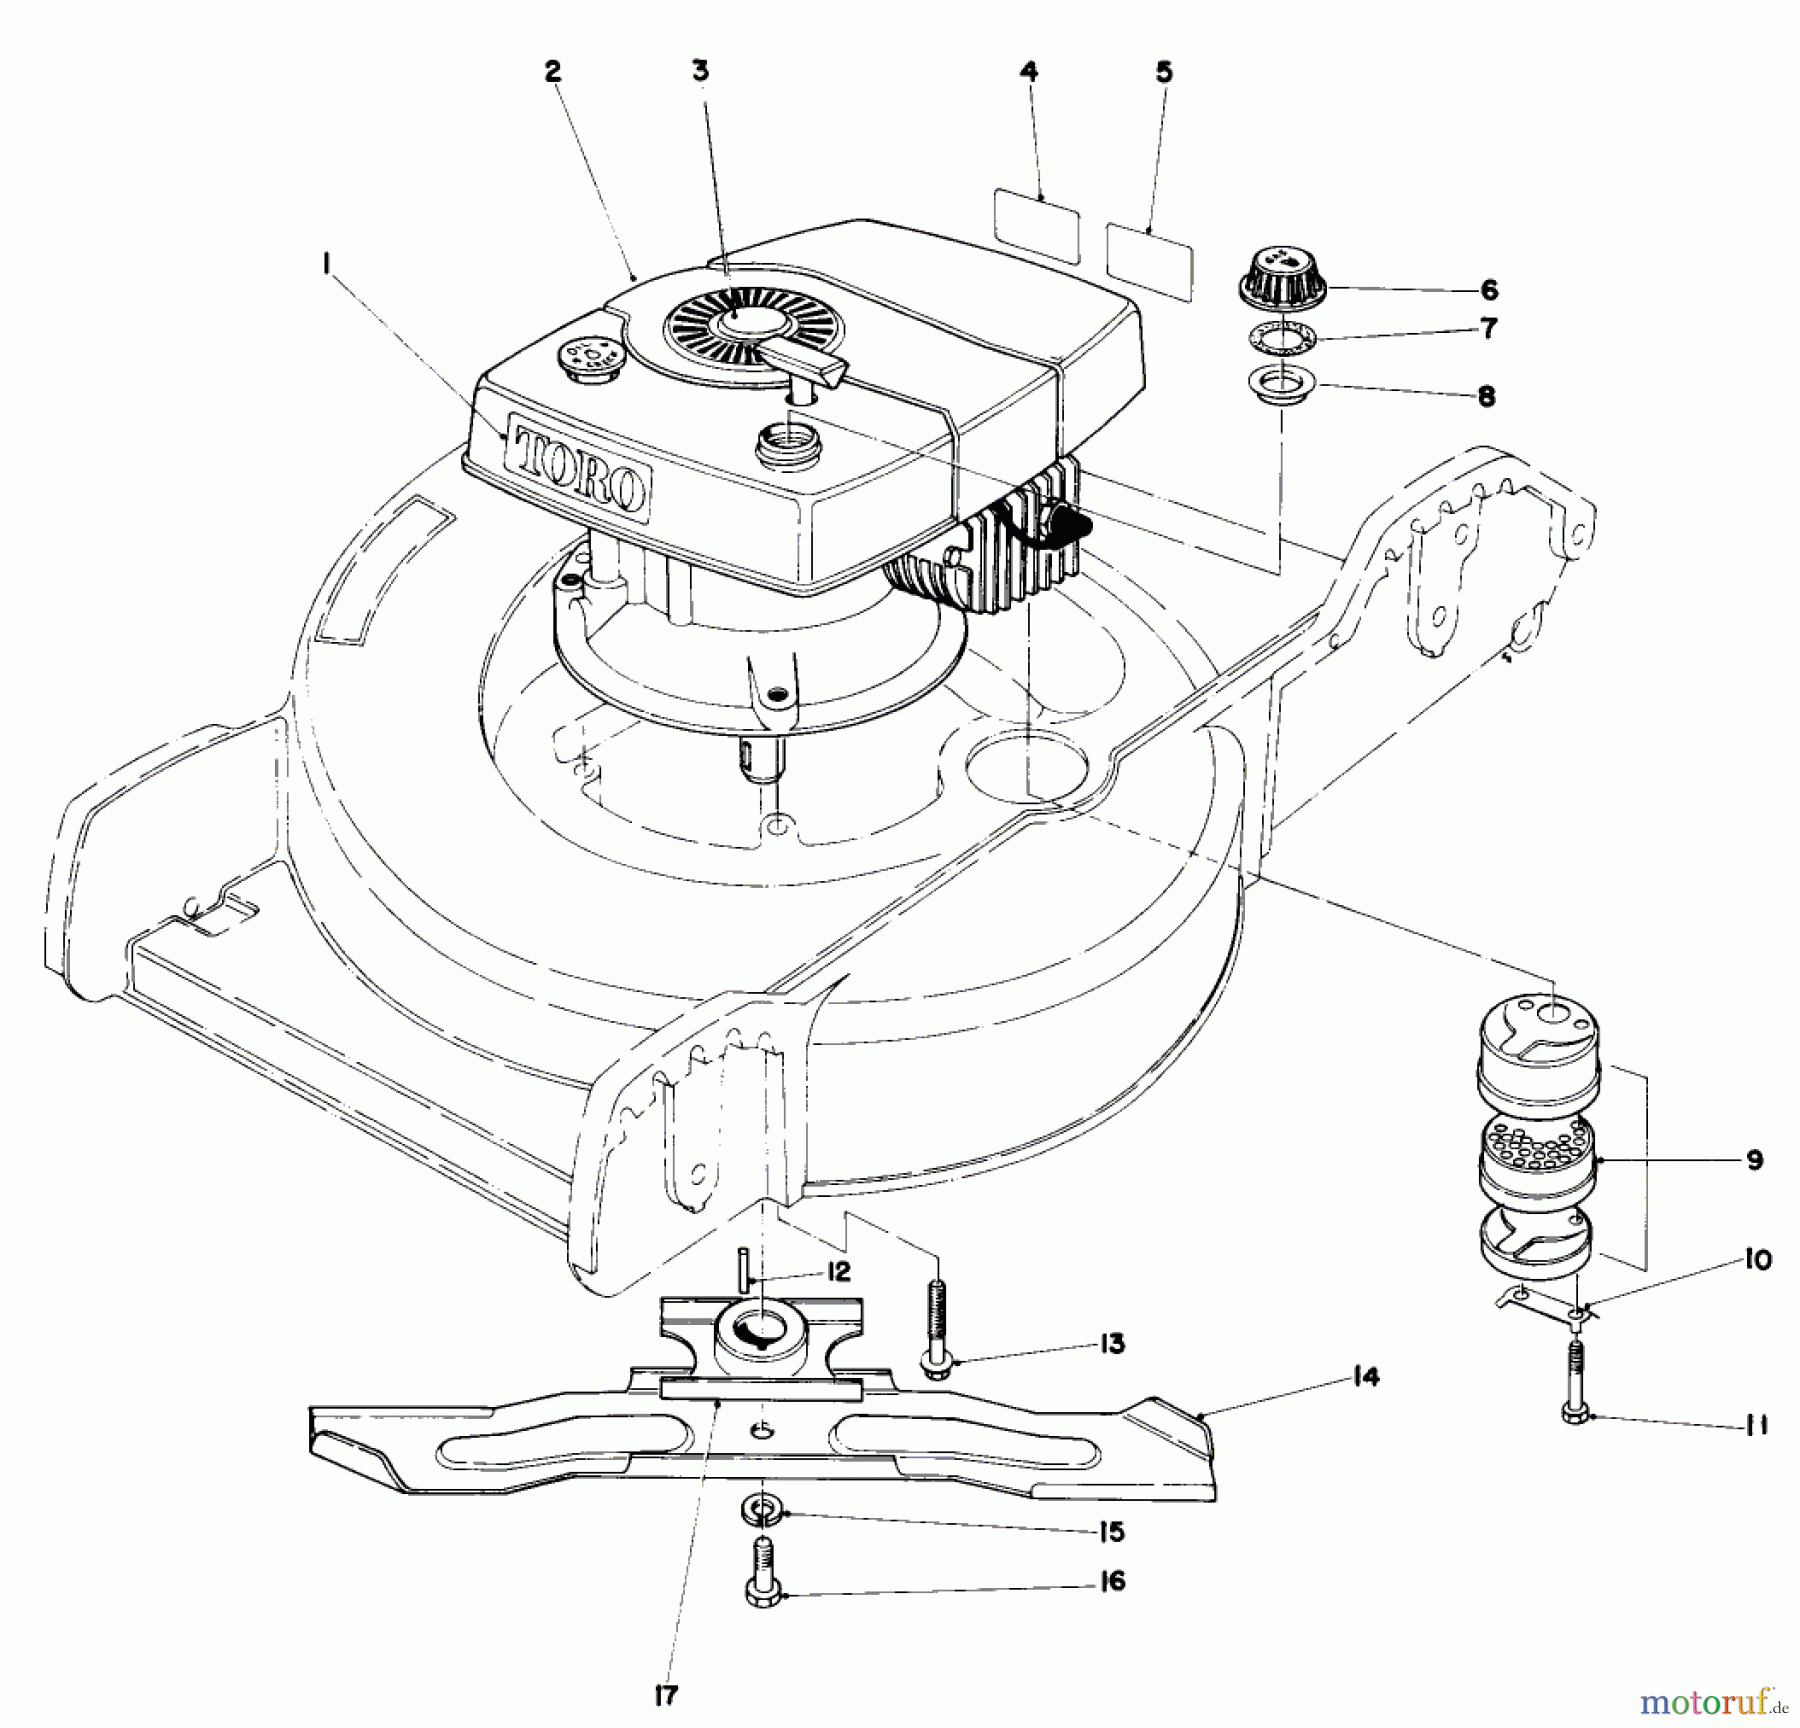  Toro Neu Mowers, Walk-Behind Seite 1 20752 - Toro Lawnmower, 1980 (0000001-0999999) ENGINE ASSEMBLY